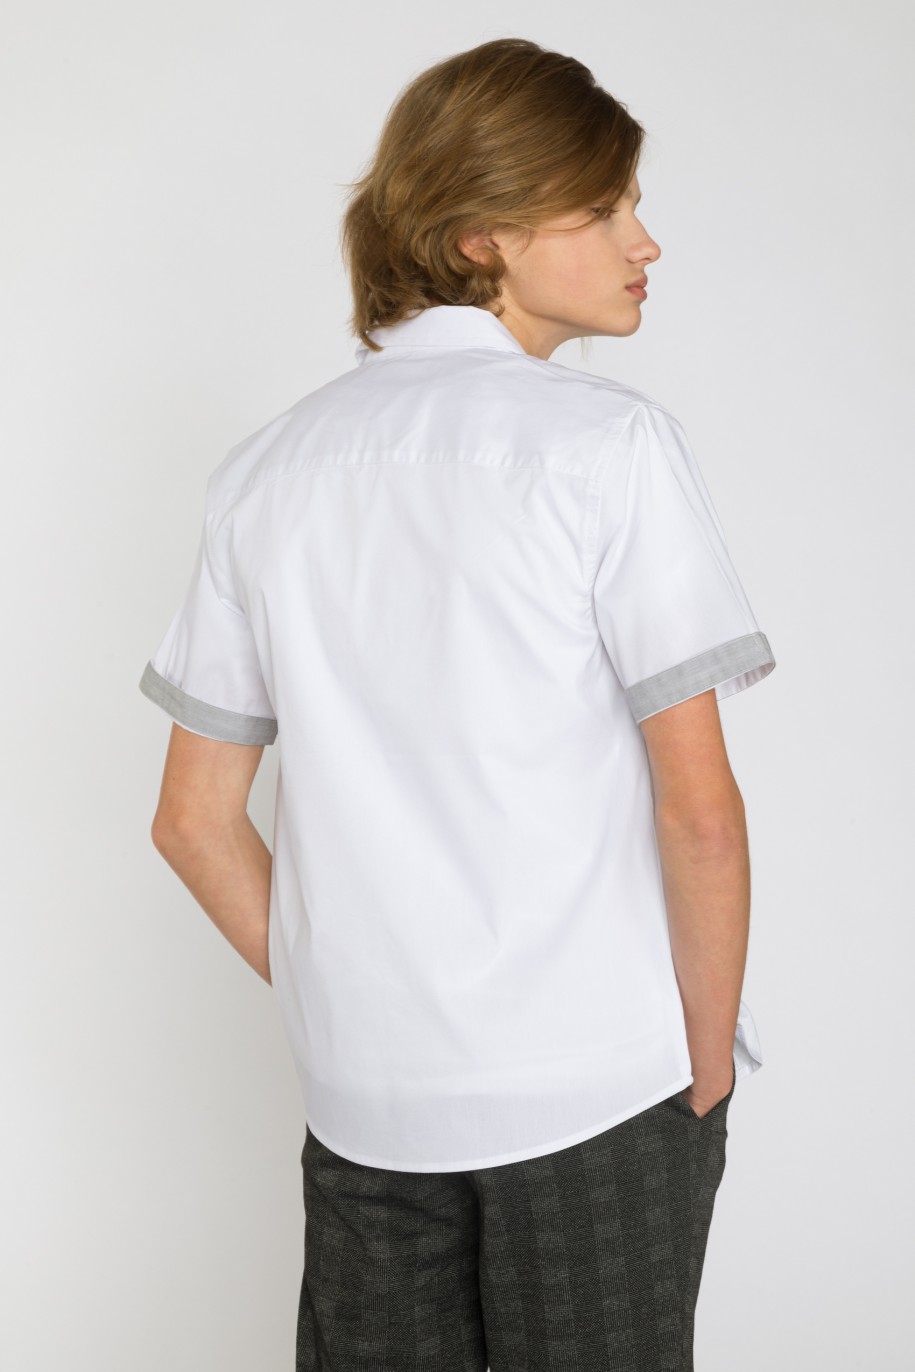 Biała koszula z krótkim rękawem i ozdobnymi mankietami dla chłopaka - 33843